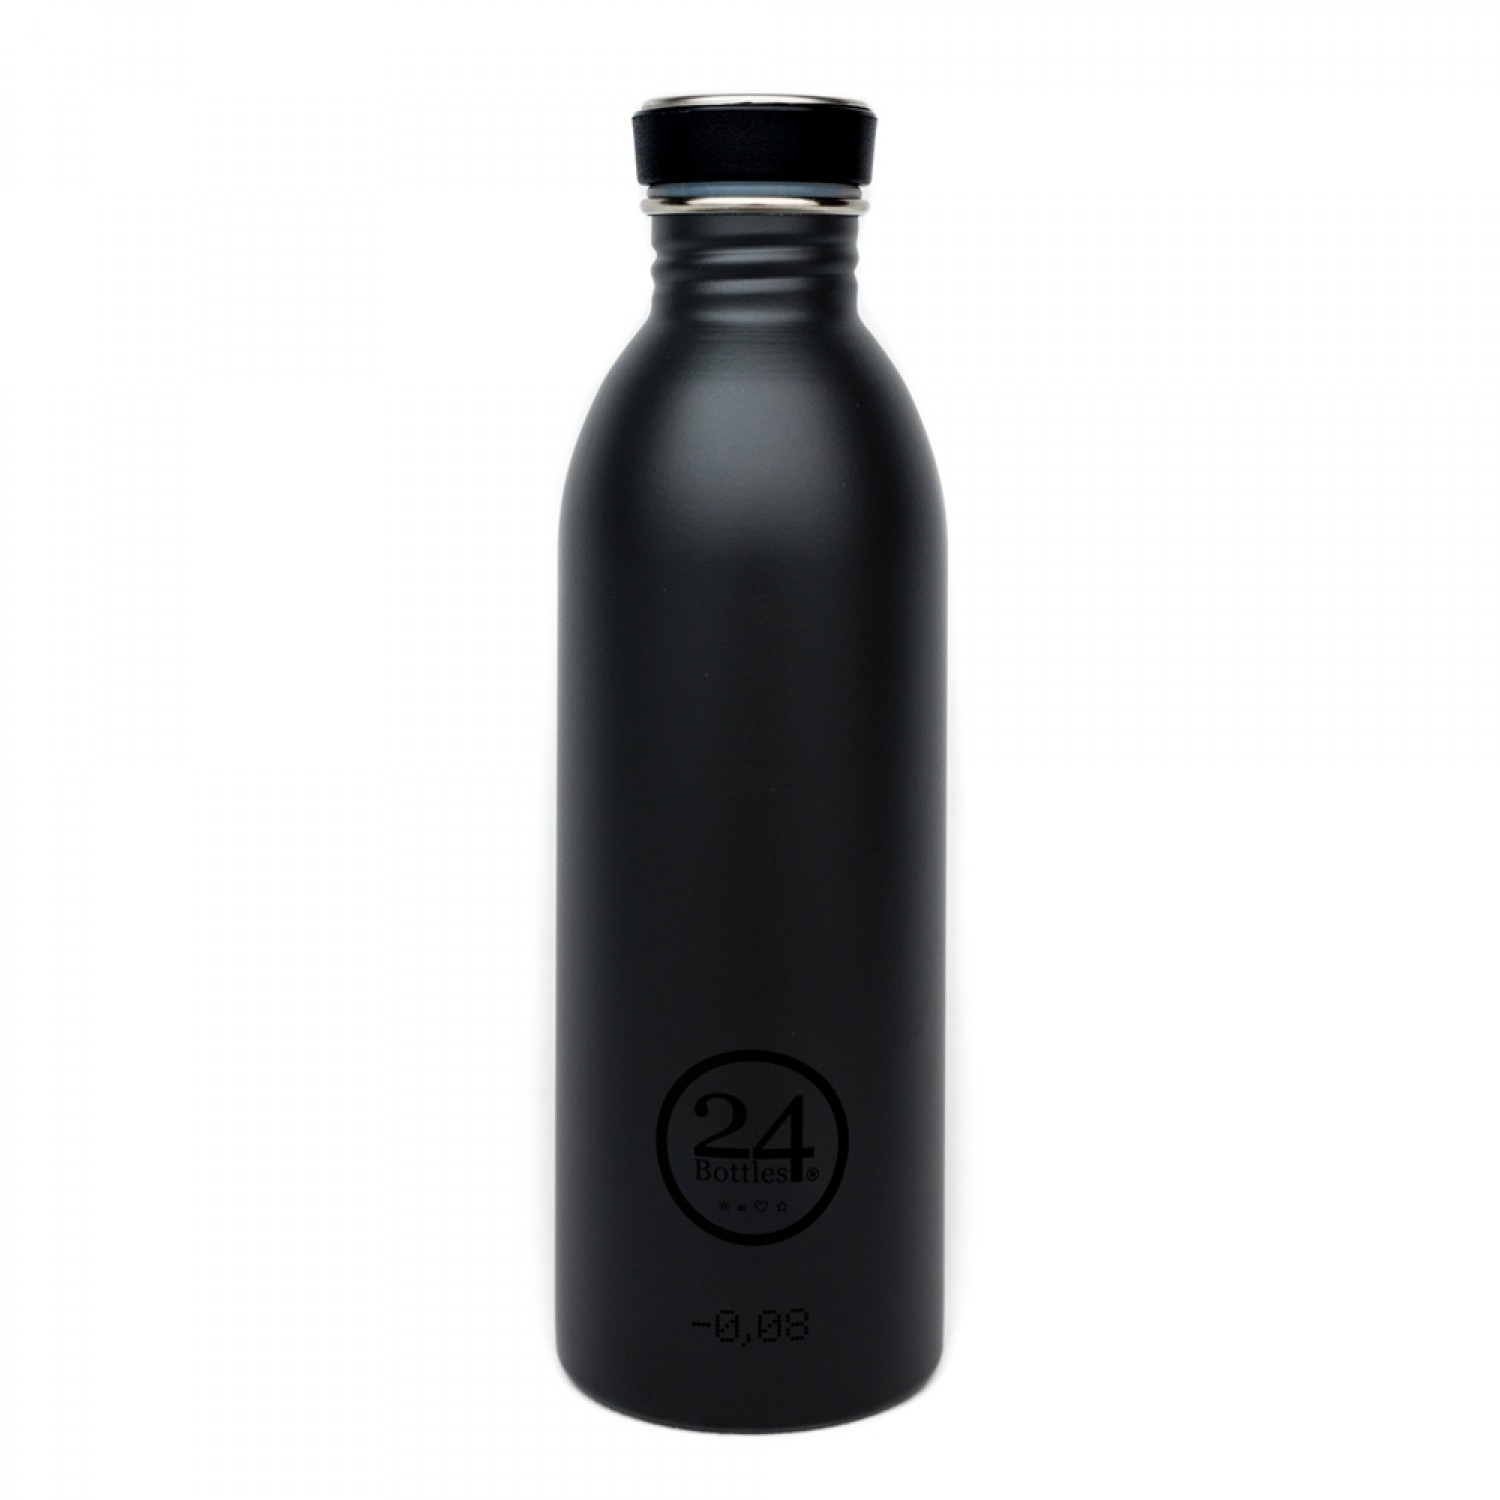 24Bottles Urban Bottle Stainless Steel Black 0.5 l